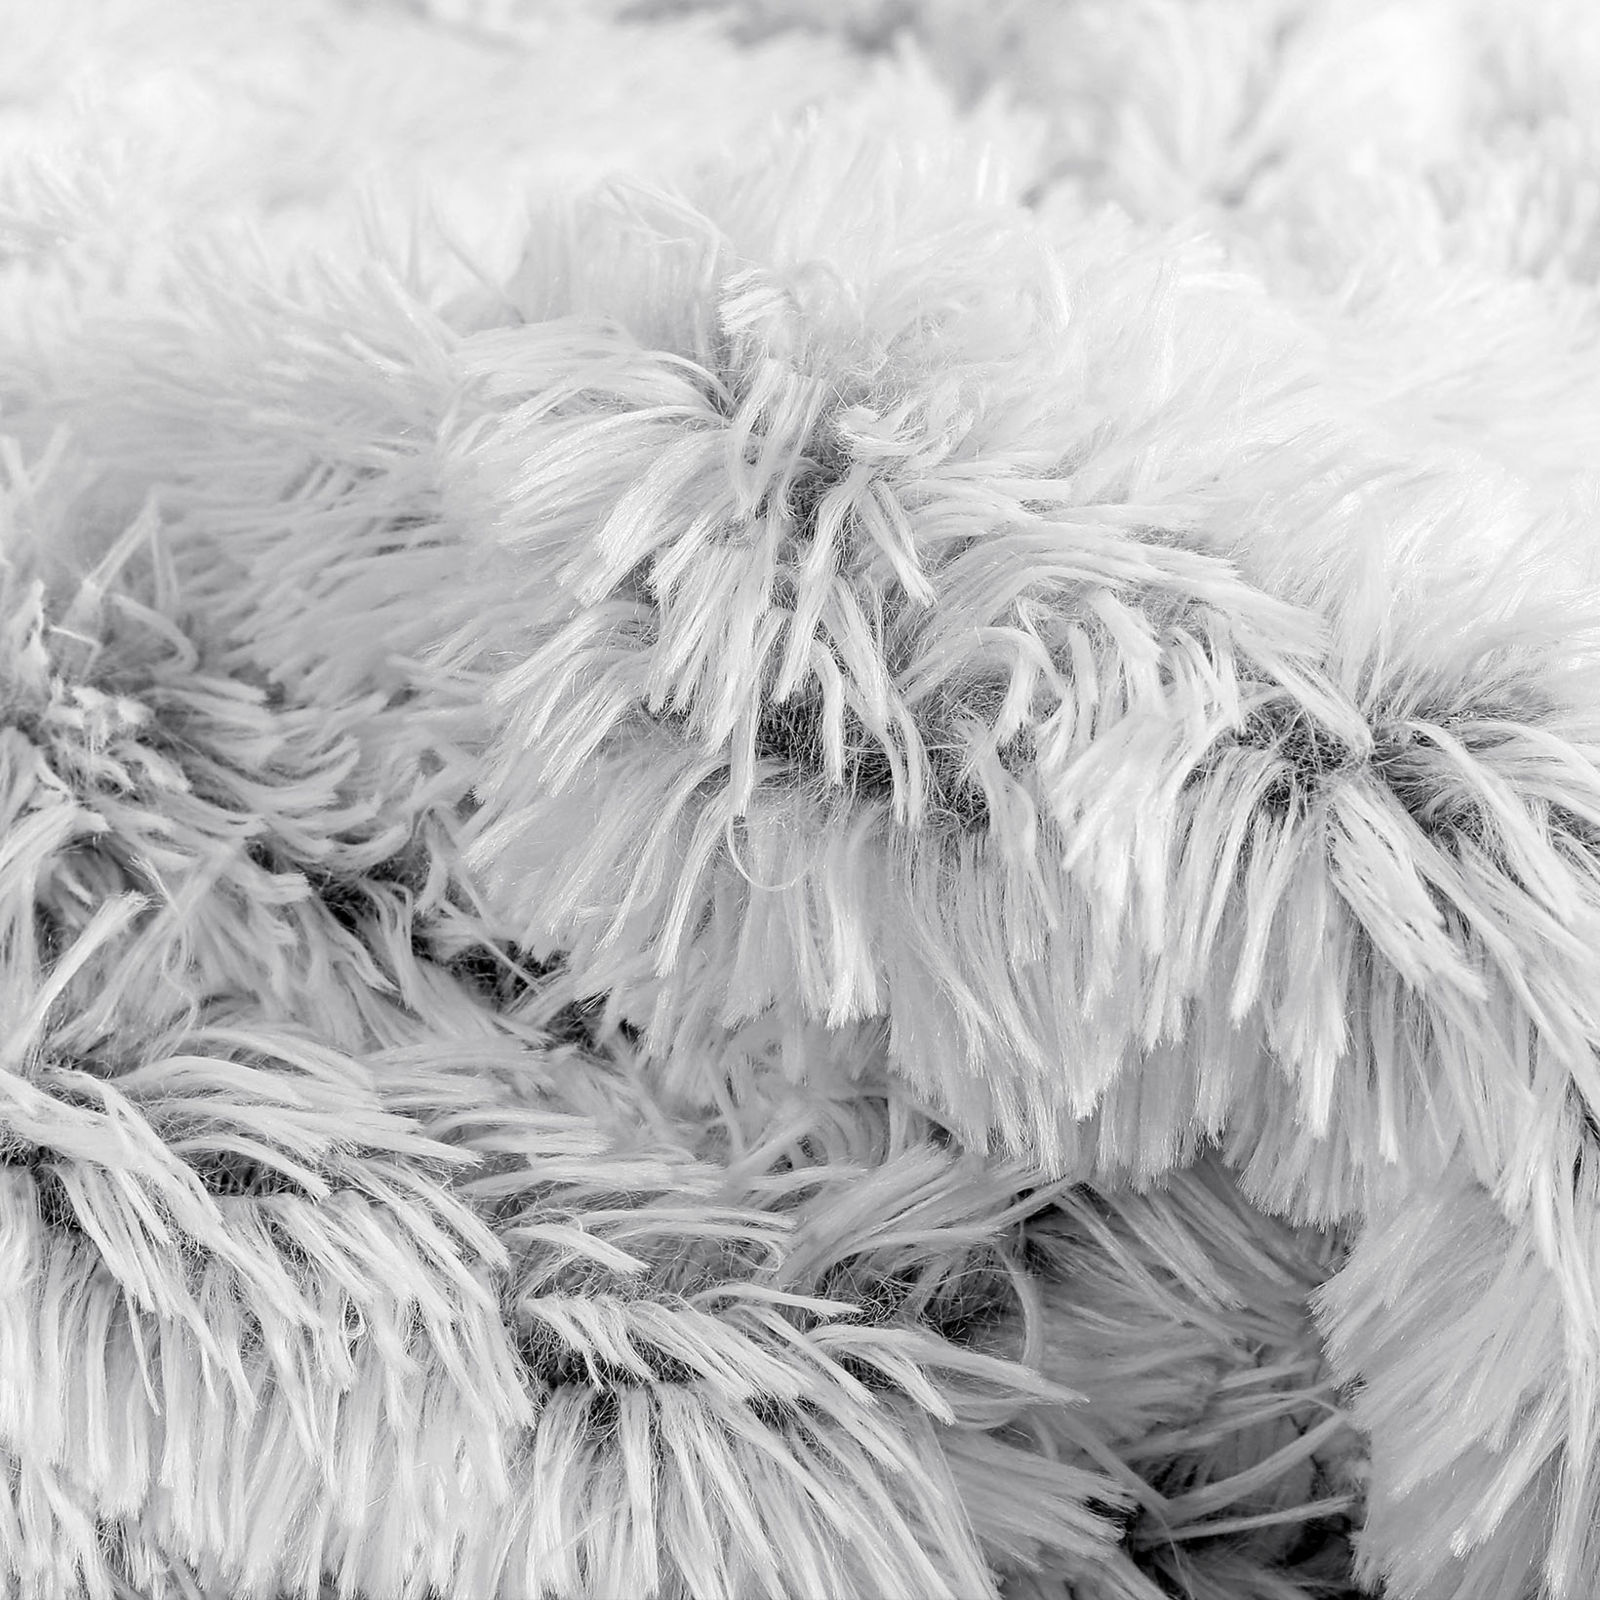 Luxus takaró - MIKRO EXTRA Hosszú szálas - fehér-szürke